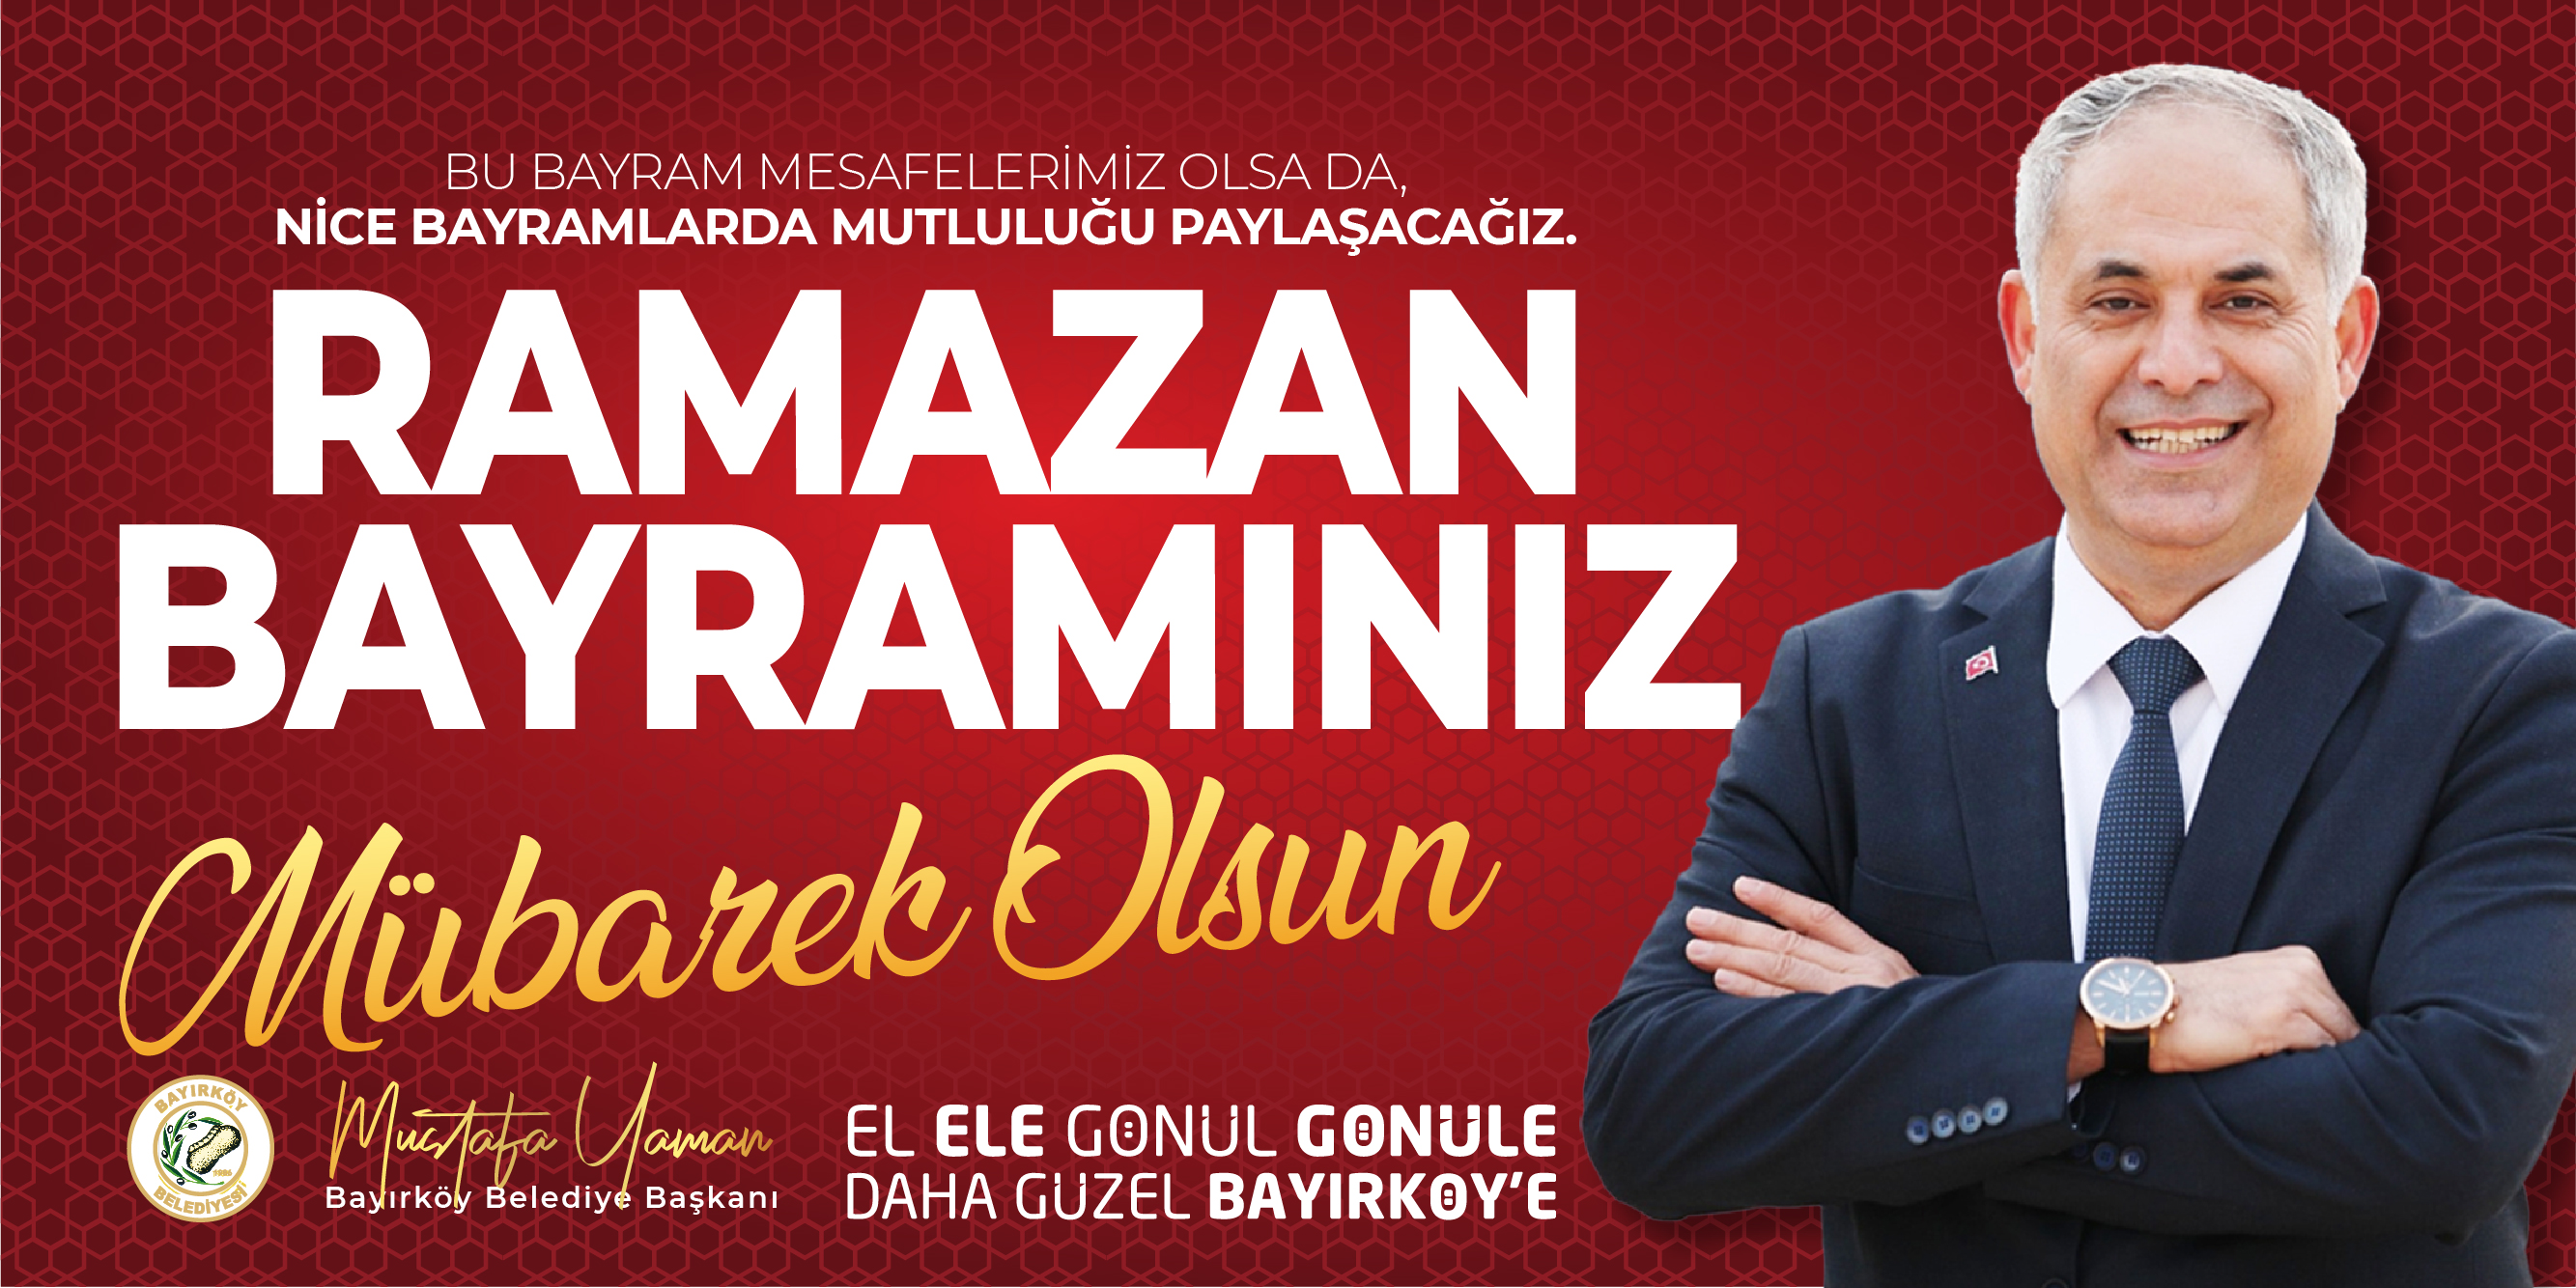 Bayırköy Belediye Başkanı Mustafa Yaman'ın Ramazan Bayramı Kutlama Mesajı